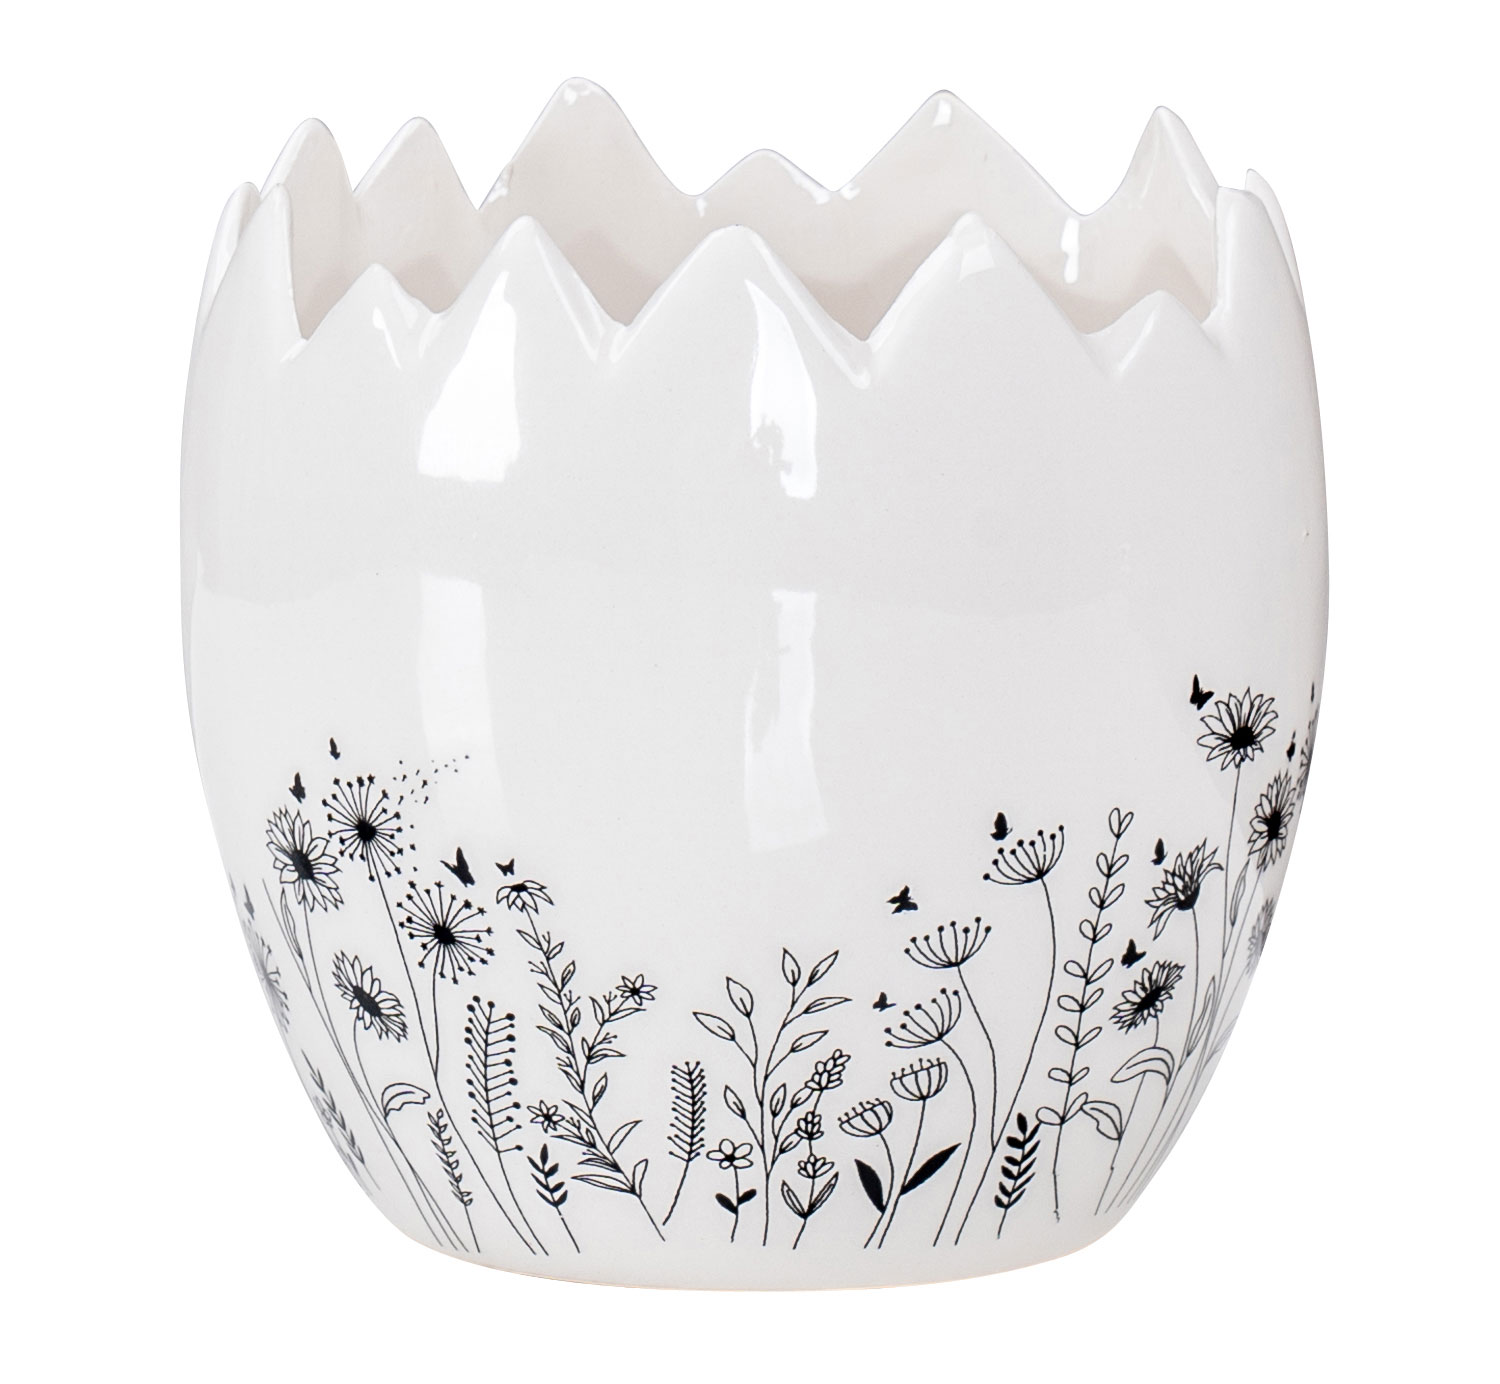 Eierschale Deko Blumentopf H10cm Keramik Schwarz Weiß Blumenwiese Ostern Deko